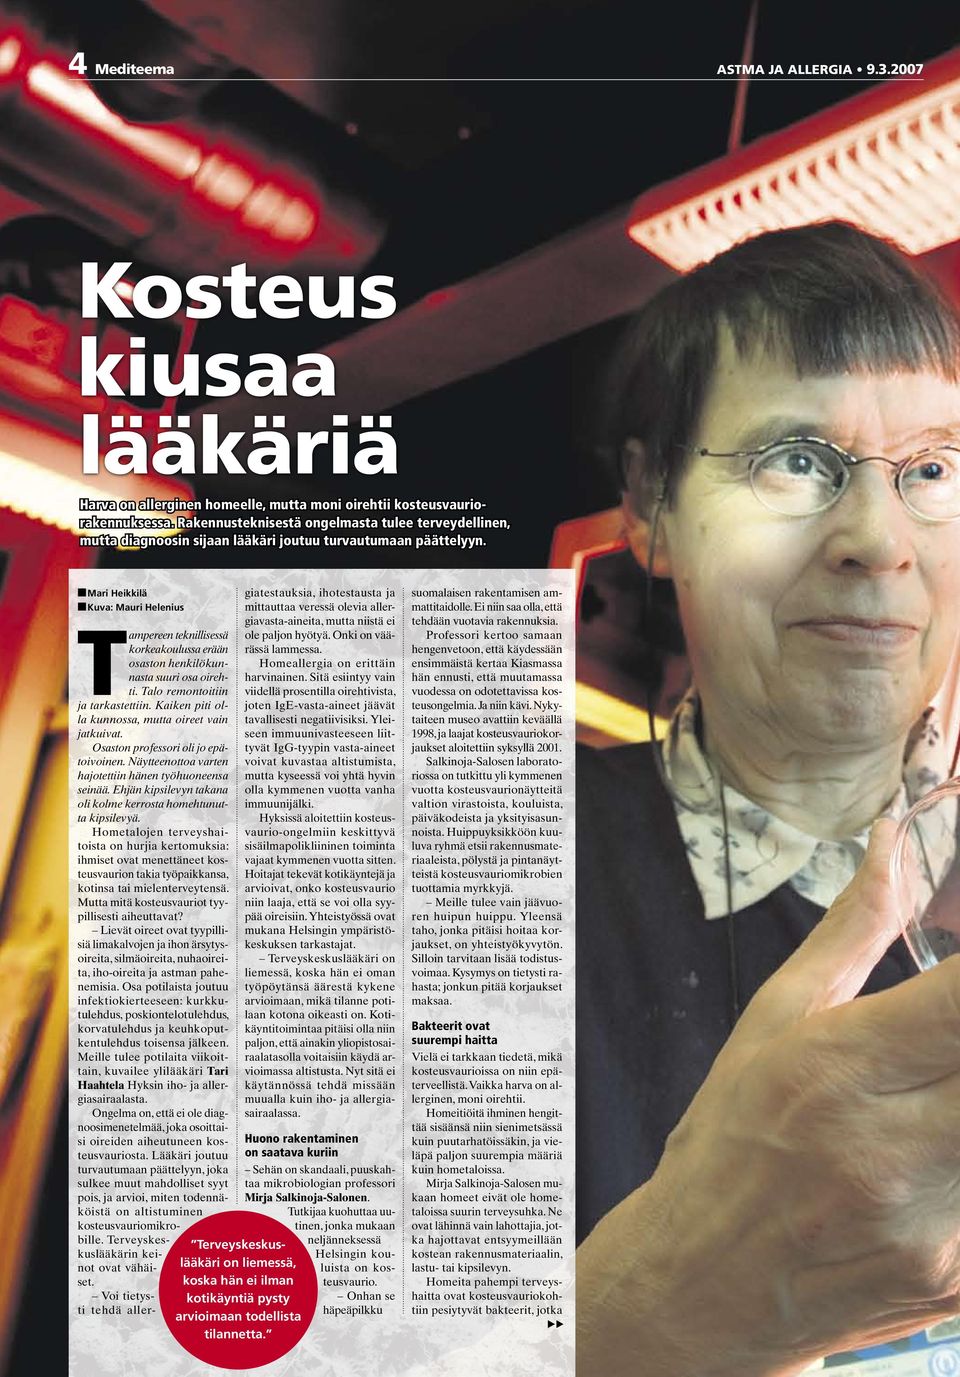 nmari Heikkilä nkuva: Mauri Helenius Terveyskeskuslääkäri on liemessä, koska hän ei ilman kotikäyntiä pysty arvioimaan todellista tilannetta.